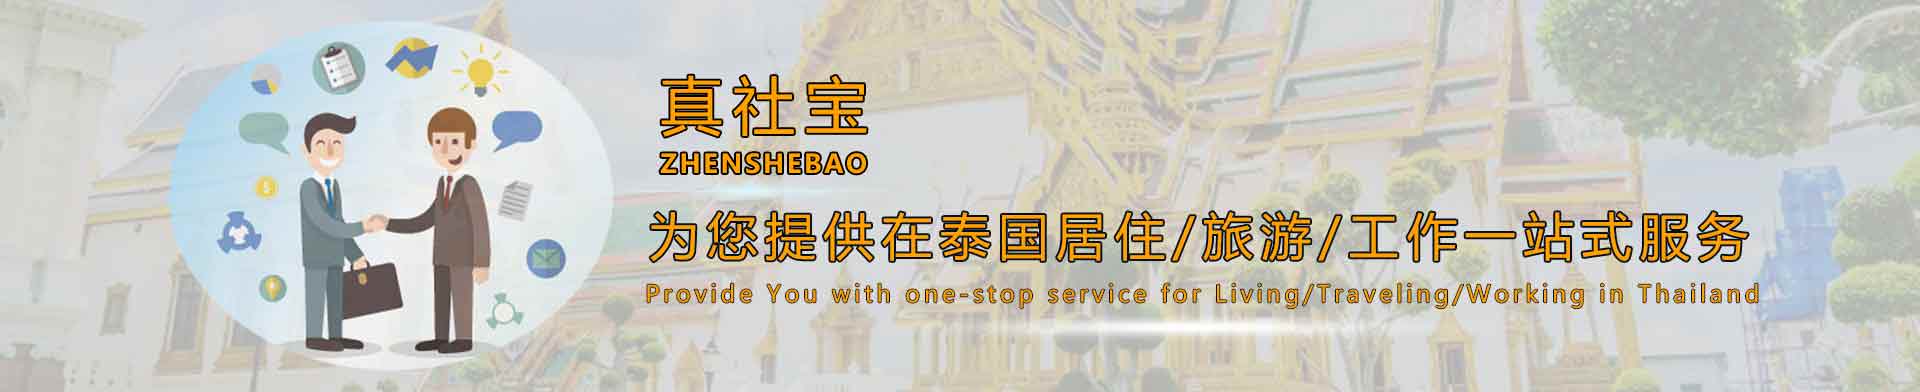 为您提供在泰国居住/旅游/工作一站式服务